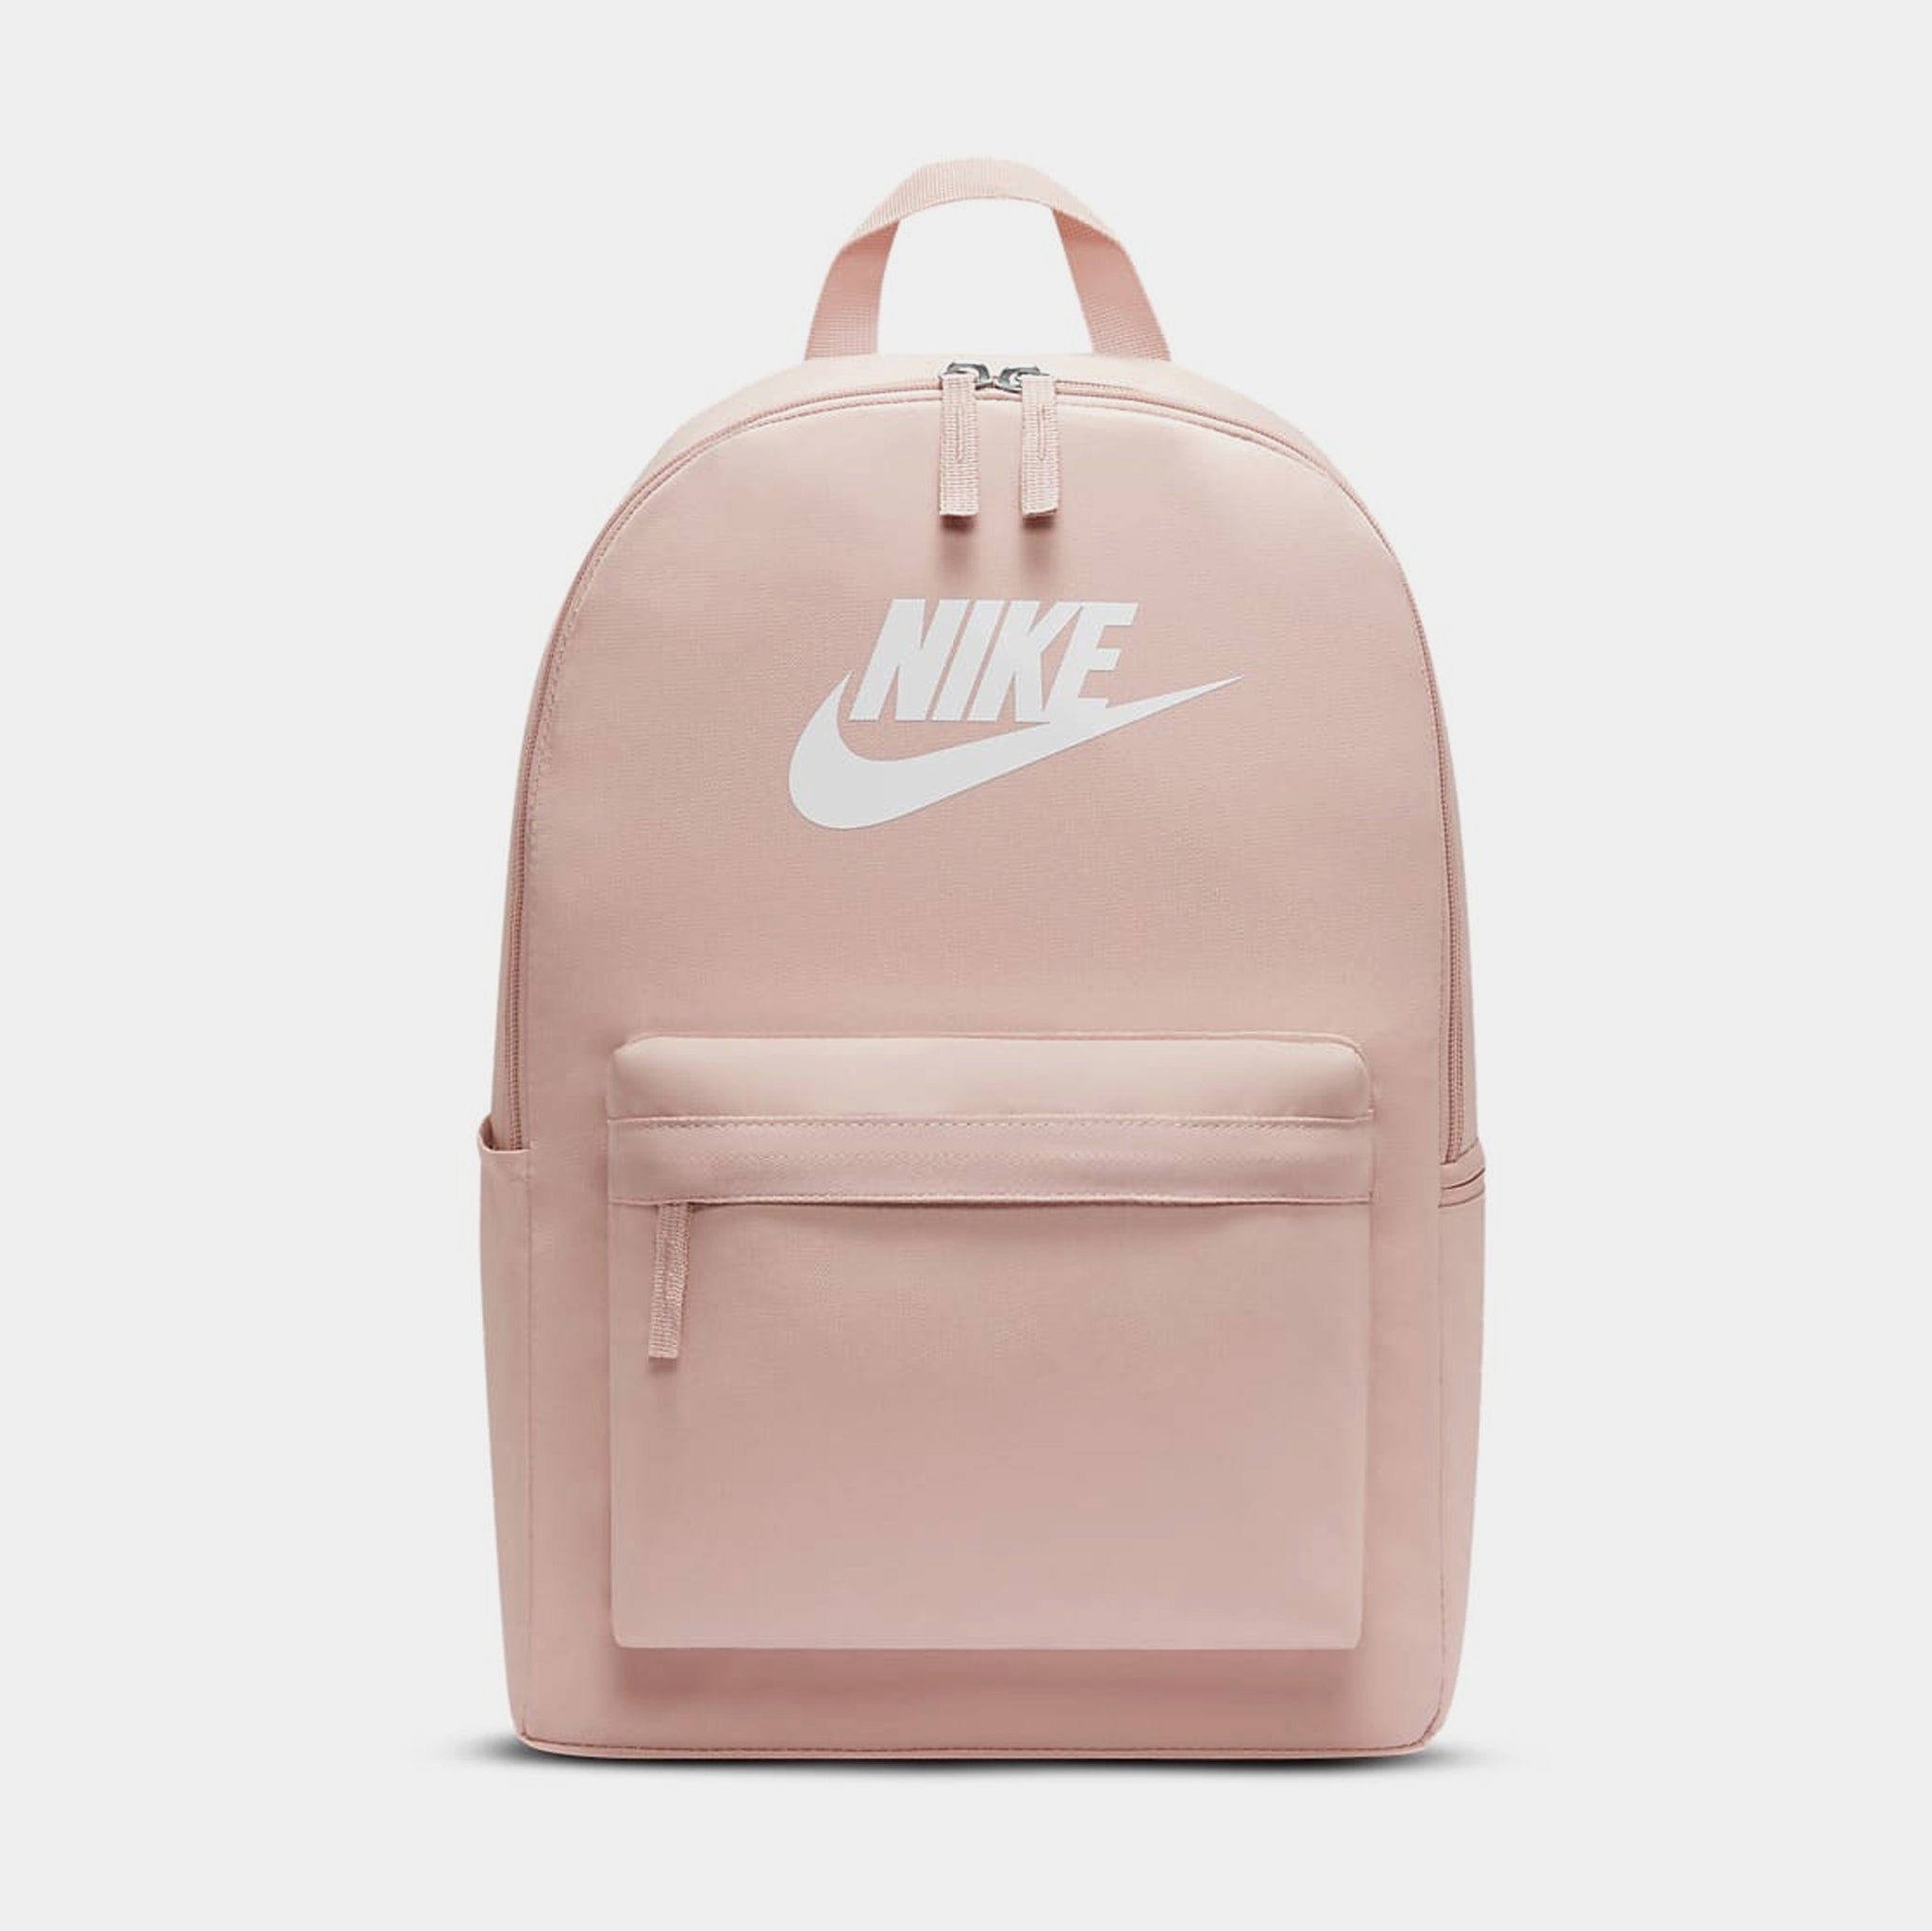 Women's Bags & Backpacks. Nike IN